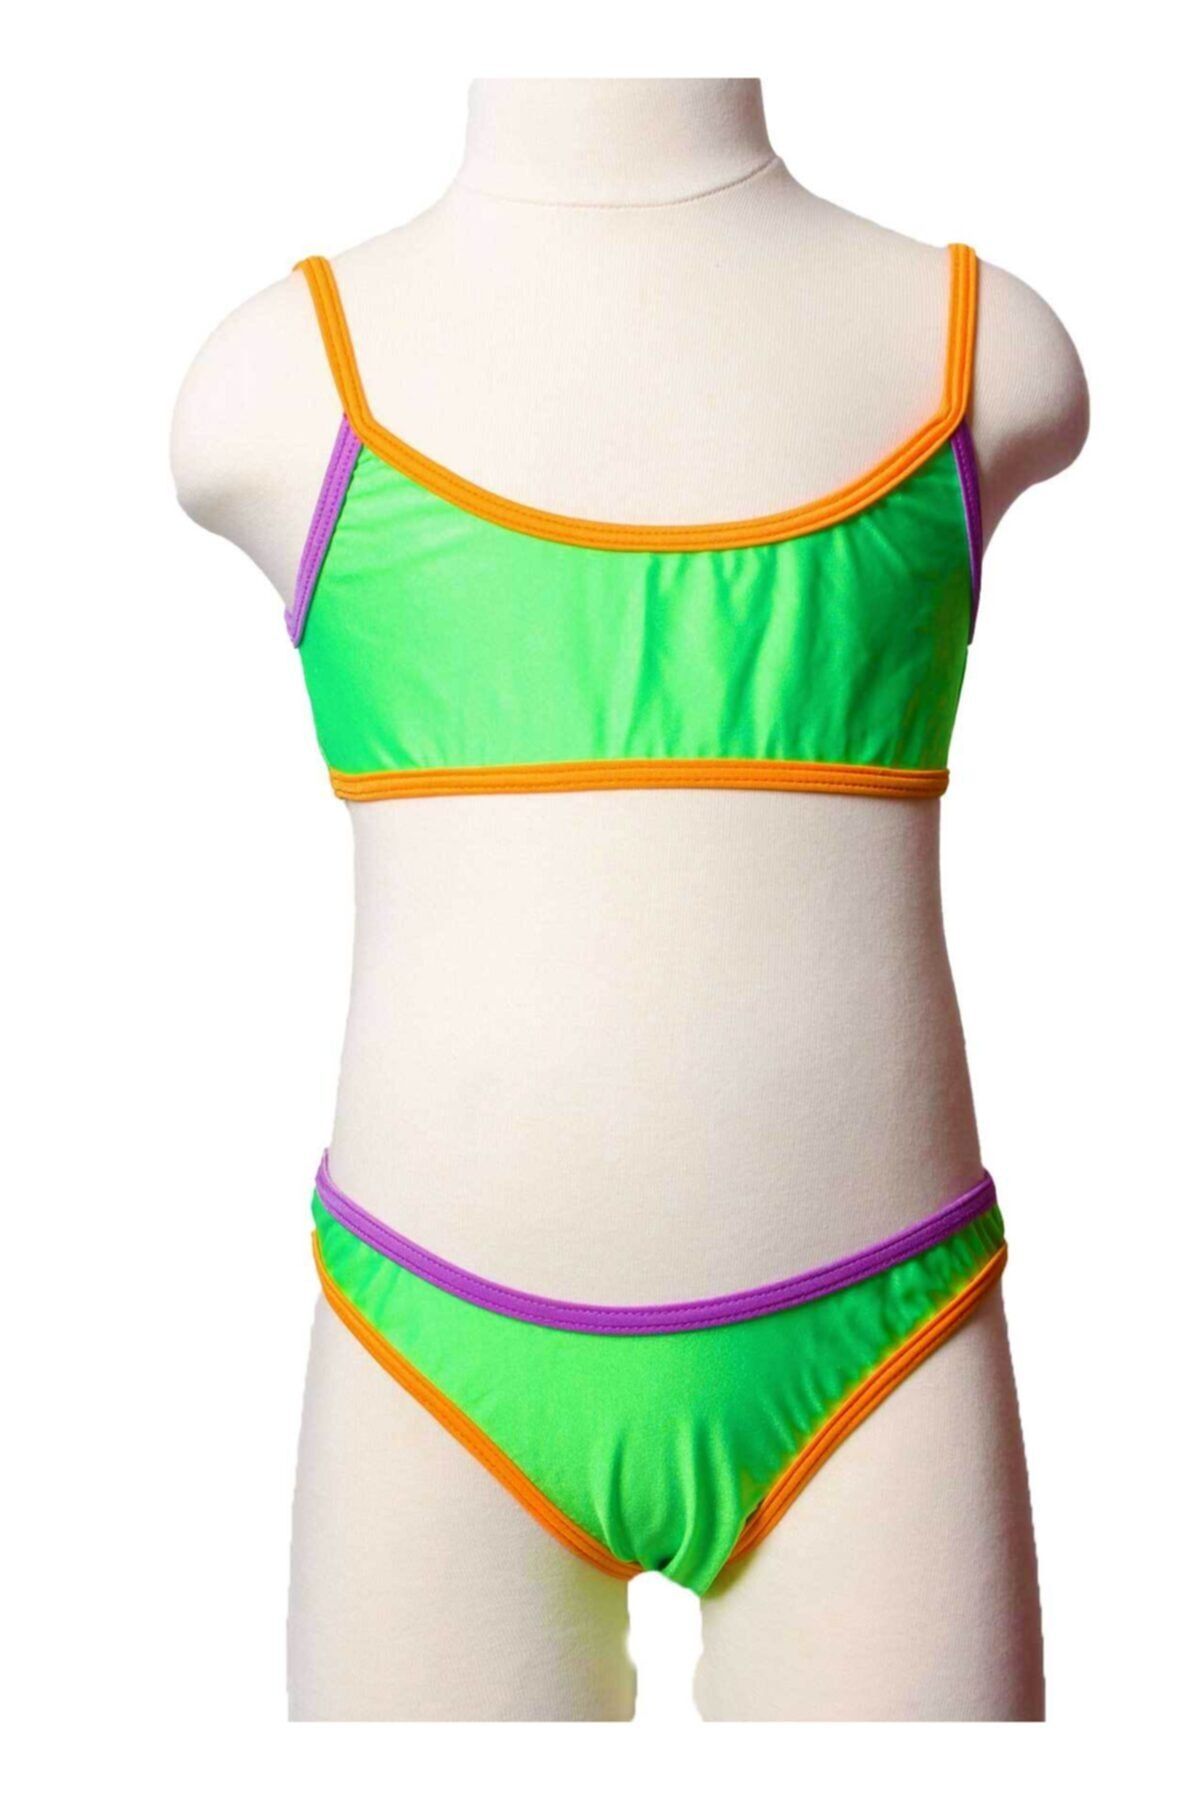 Sude Ayl Kız Çocuk A.yeşil Bustiyer Model Bikini Düz Alt Üst Takım 82